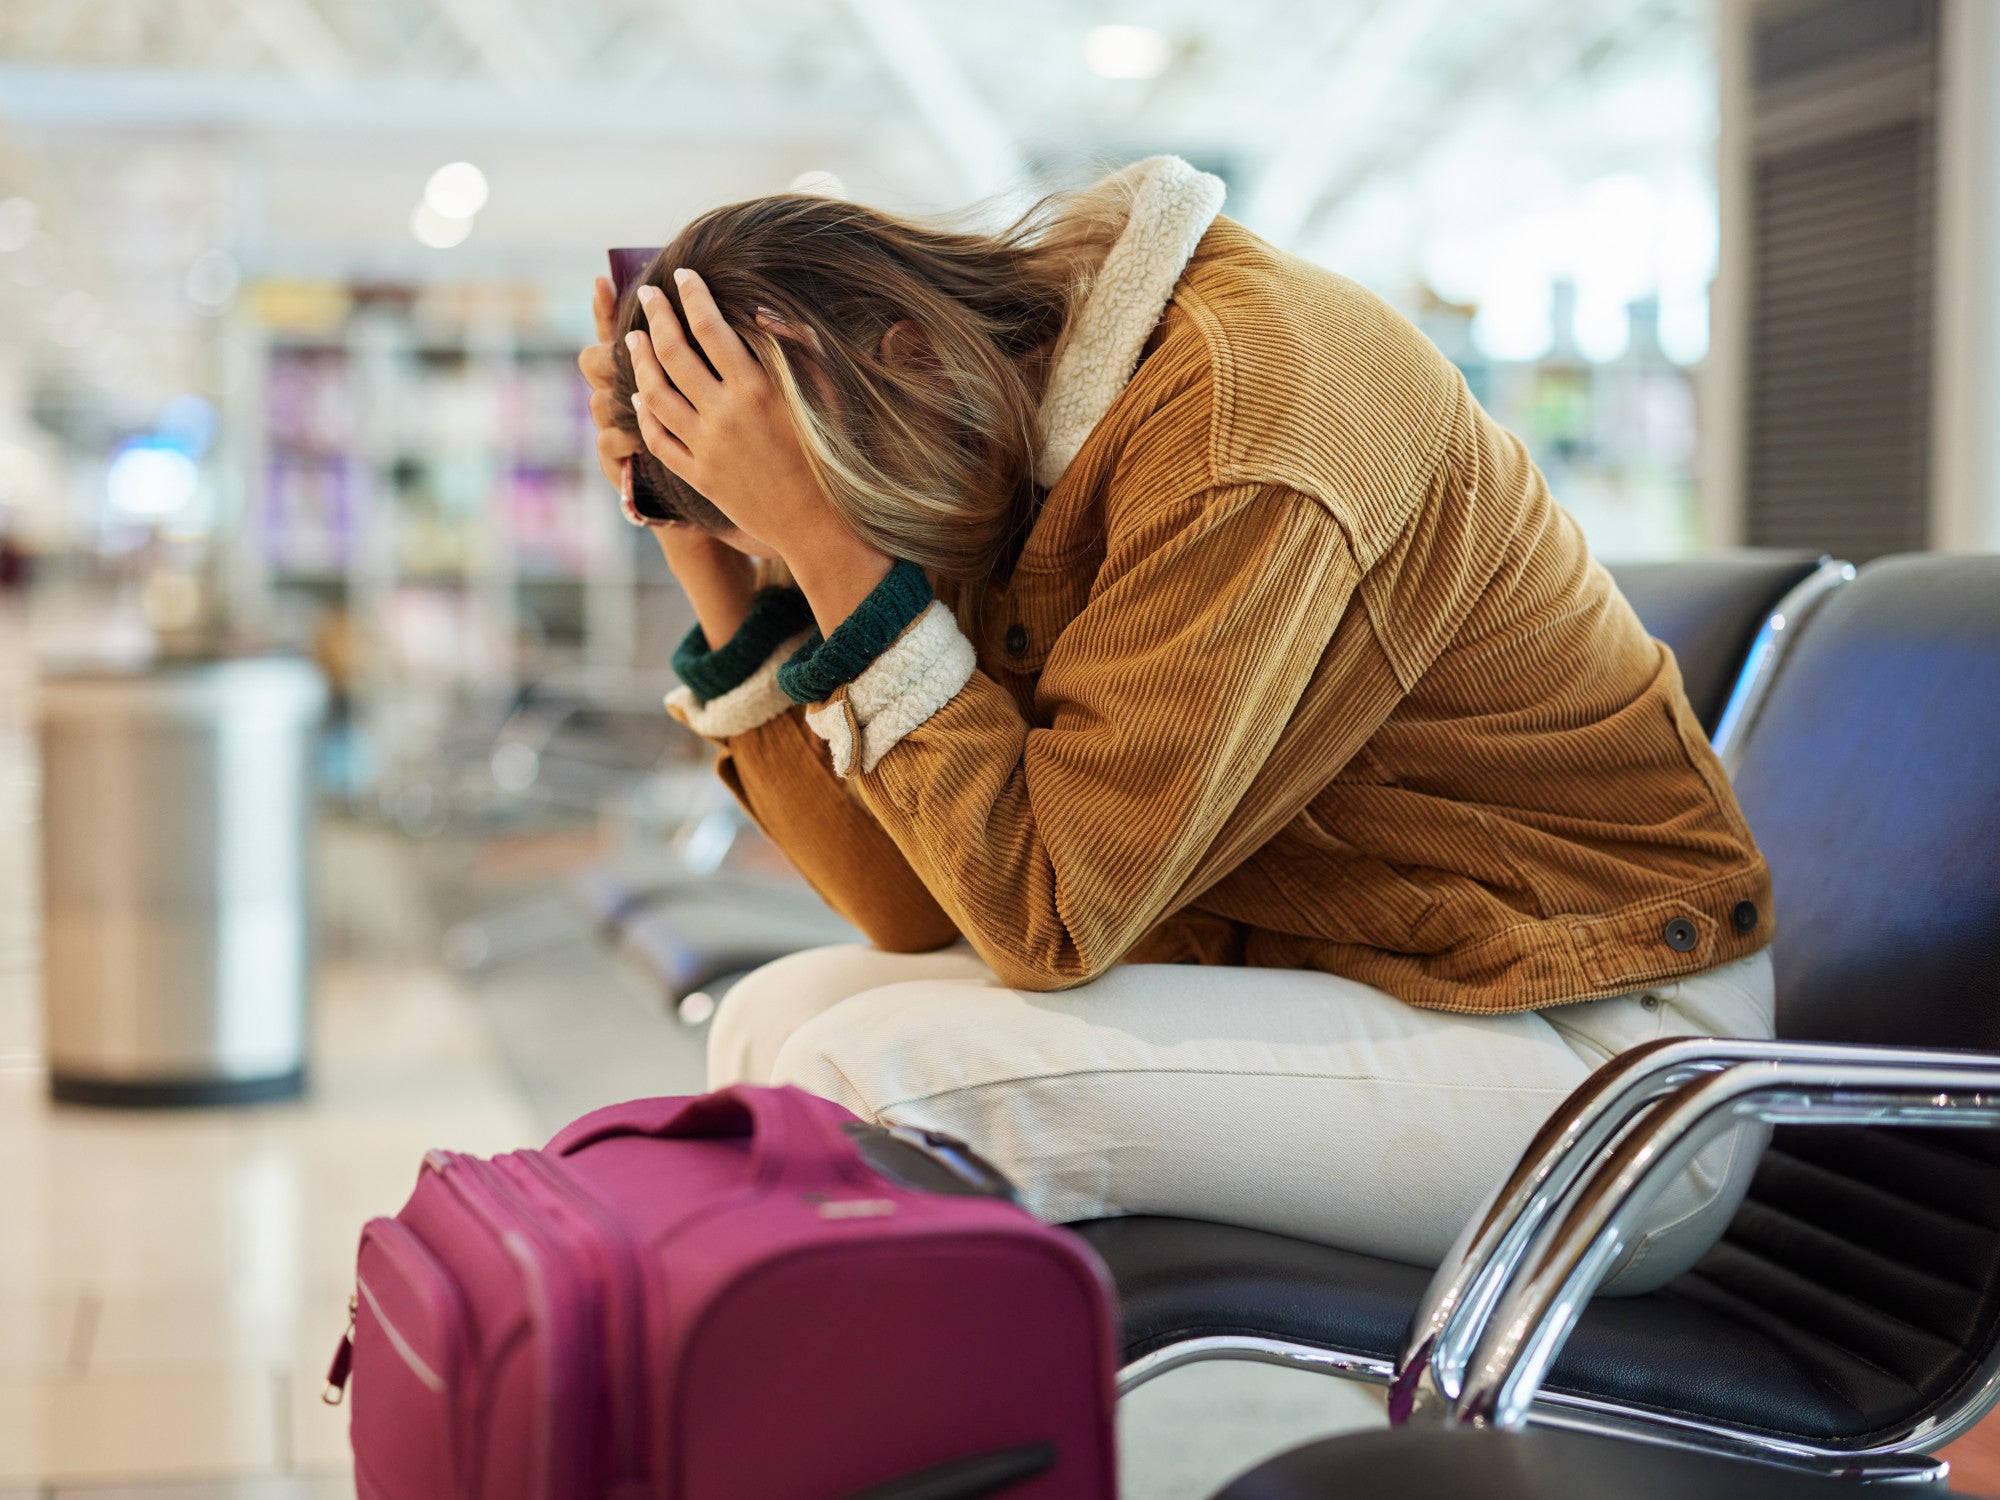 Frau sitzt mit gesenktem Kopf am Flughafen neben ihrem Koffer.